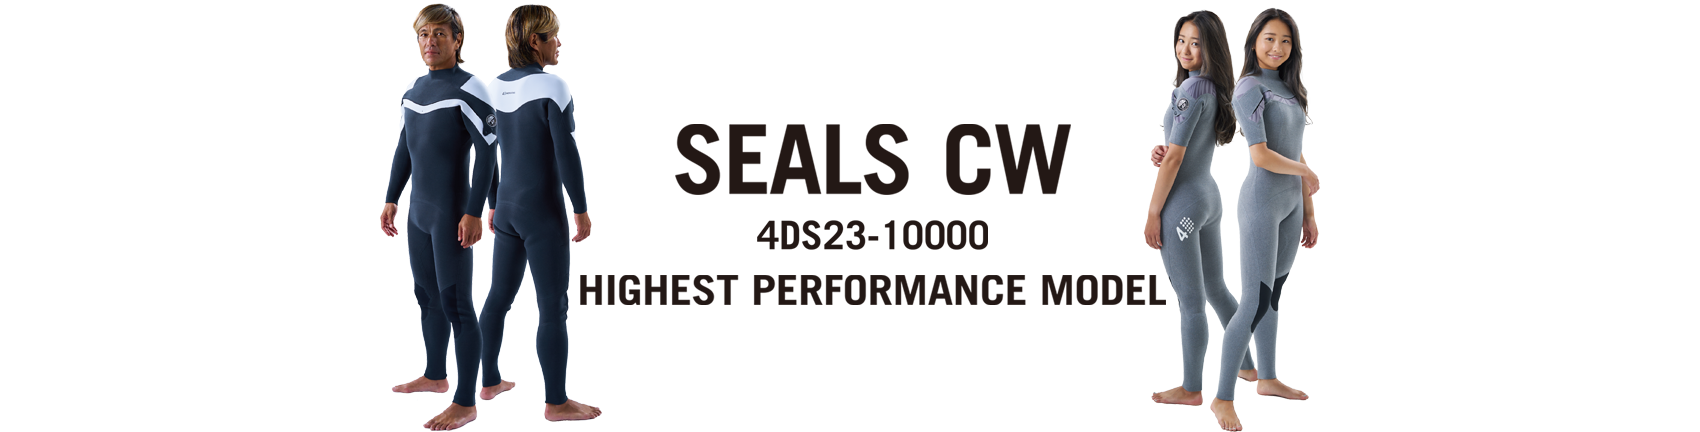 SEALS-CW